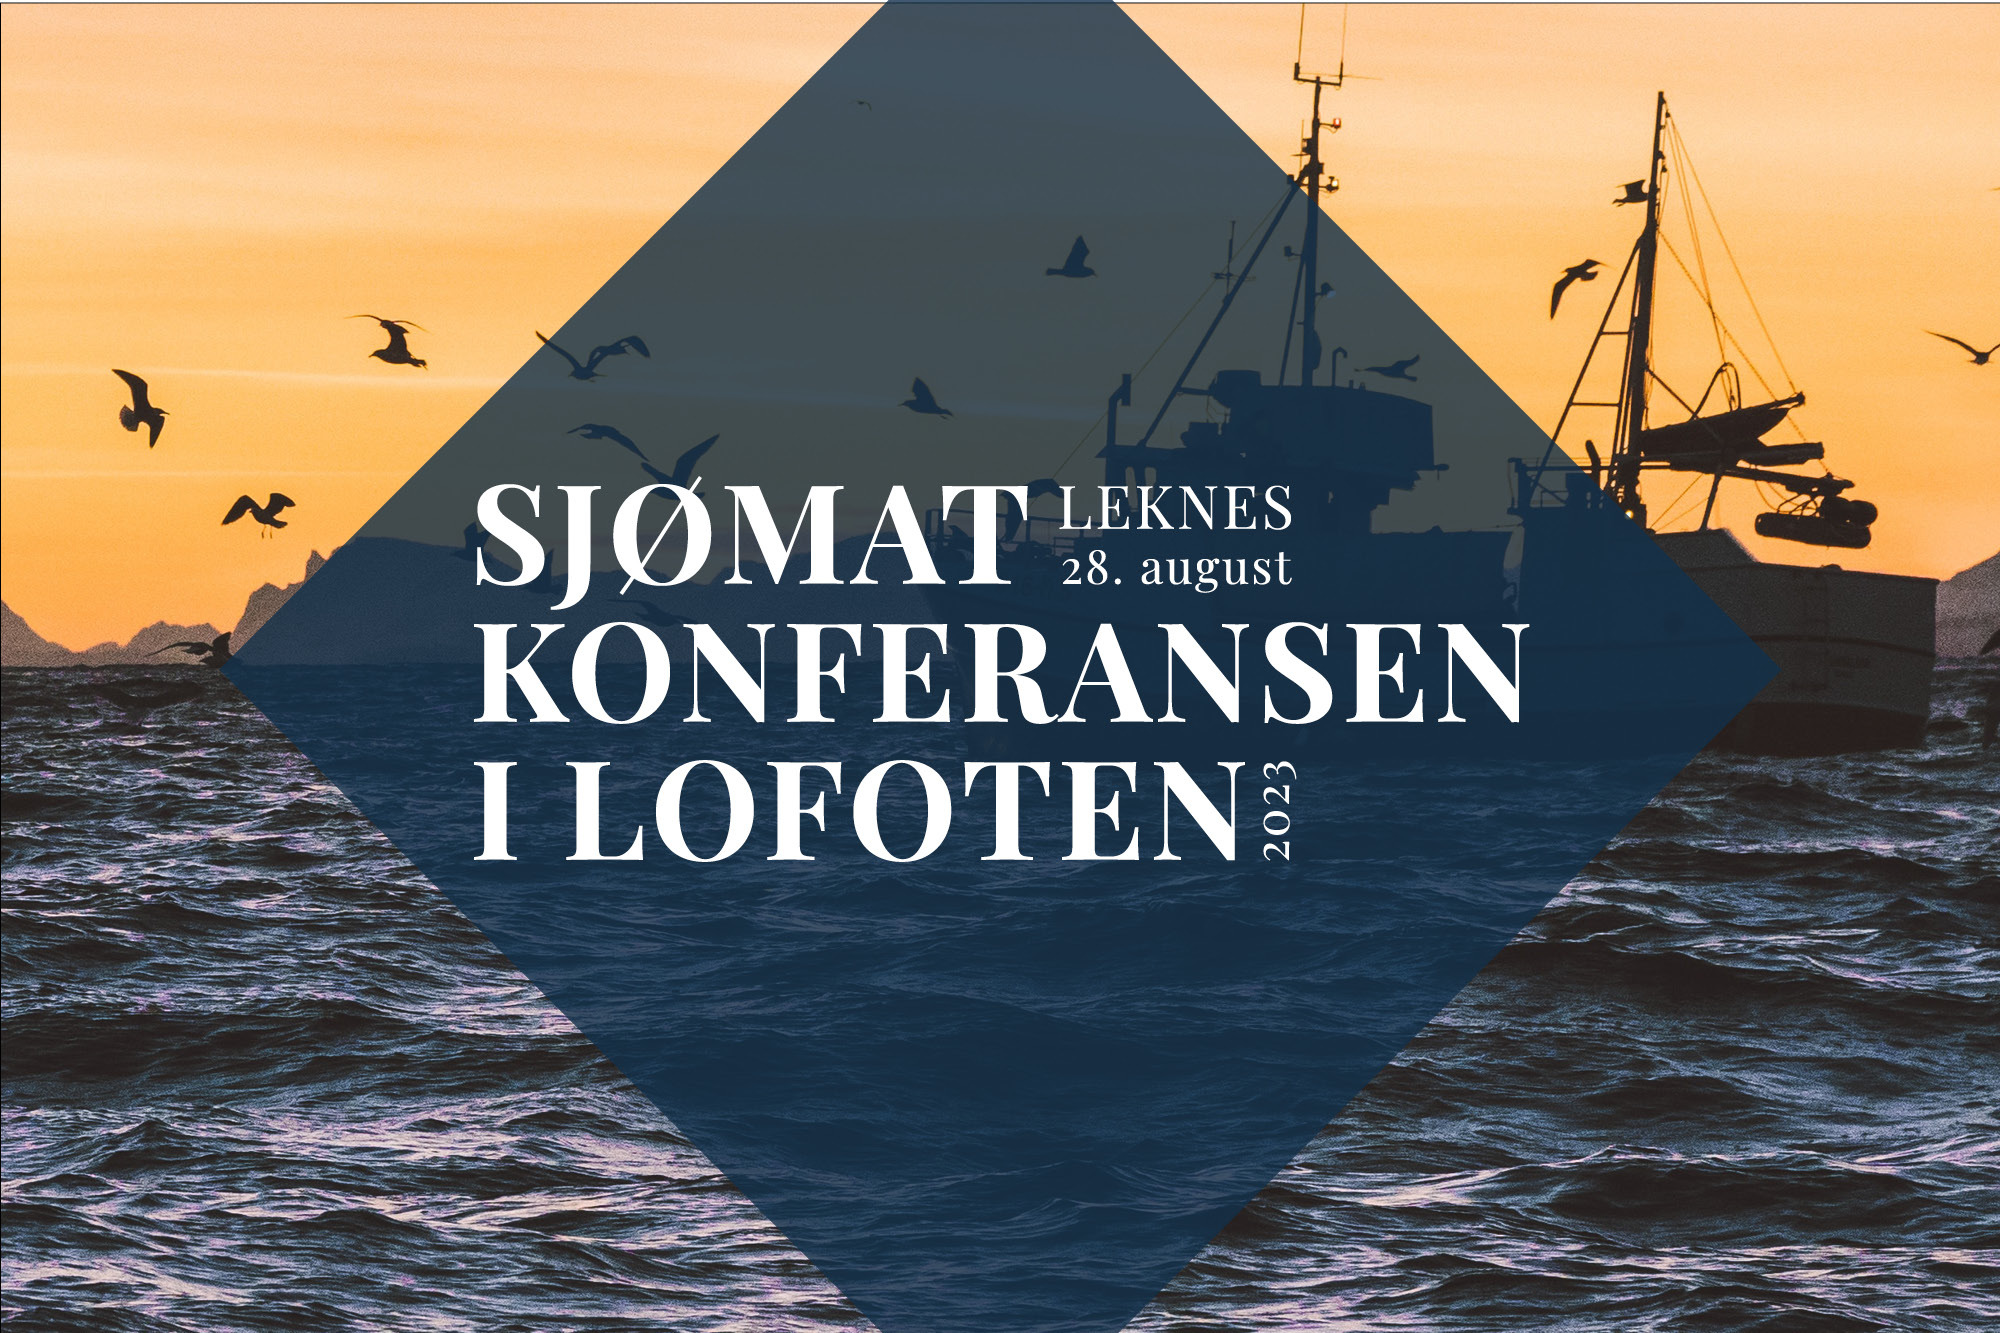 Sjømatkonferansen i Lofoten